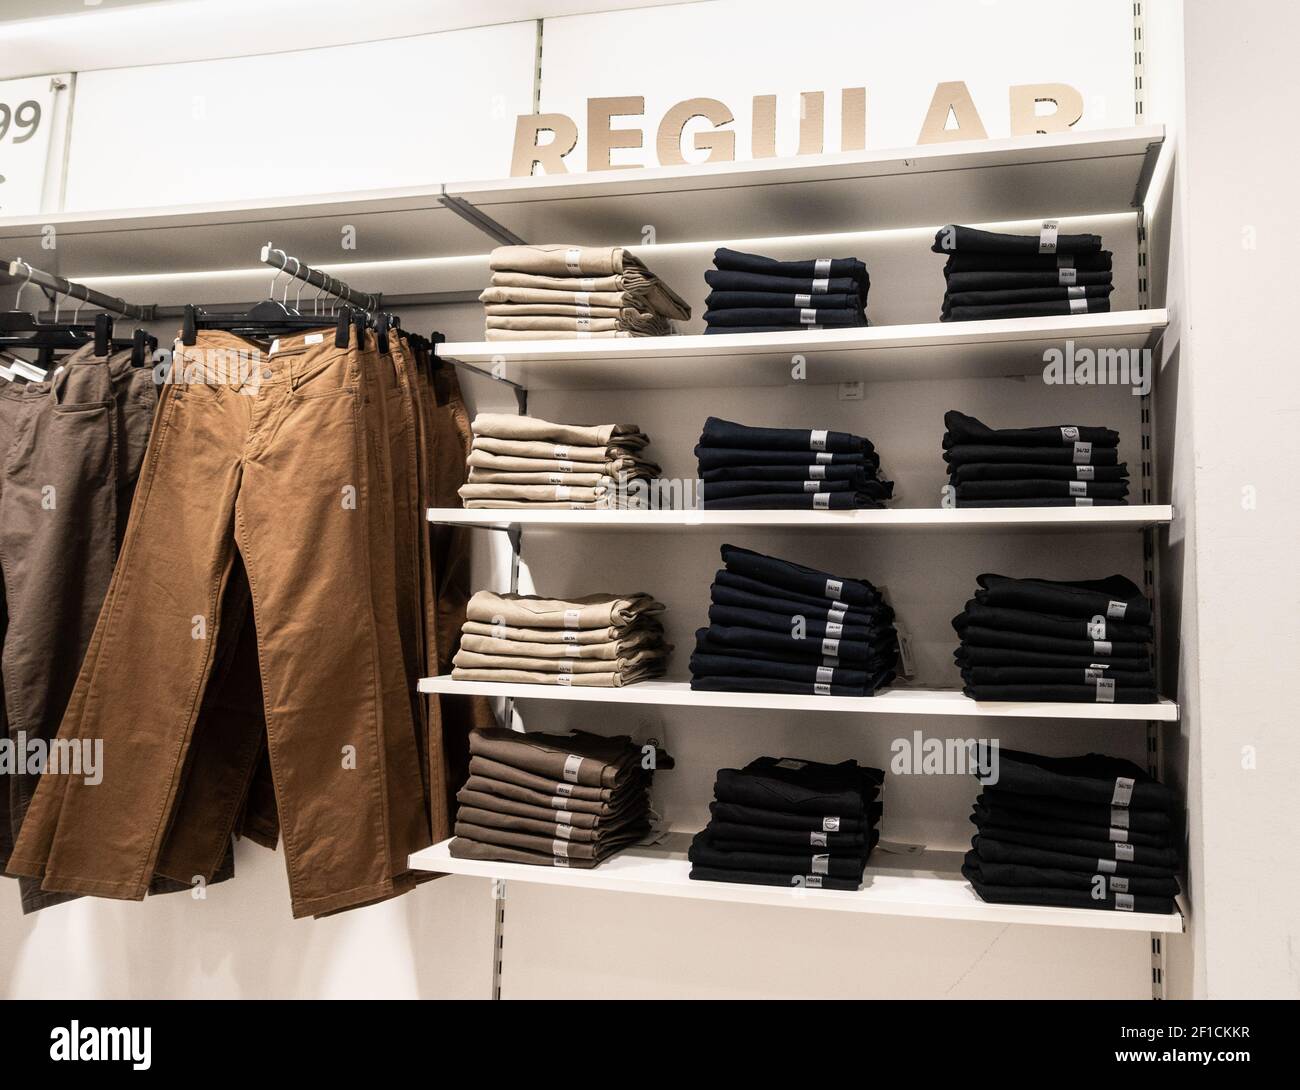 https://c8.alamy.com/comp/2F1CKKR/regular-fit-denim-jeans-display-in-clothing-store-2F1CKKR.jpg